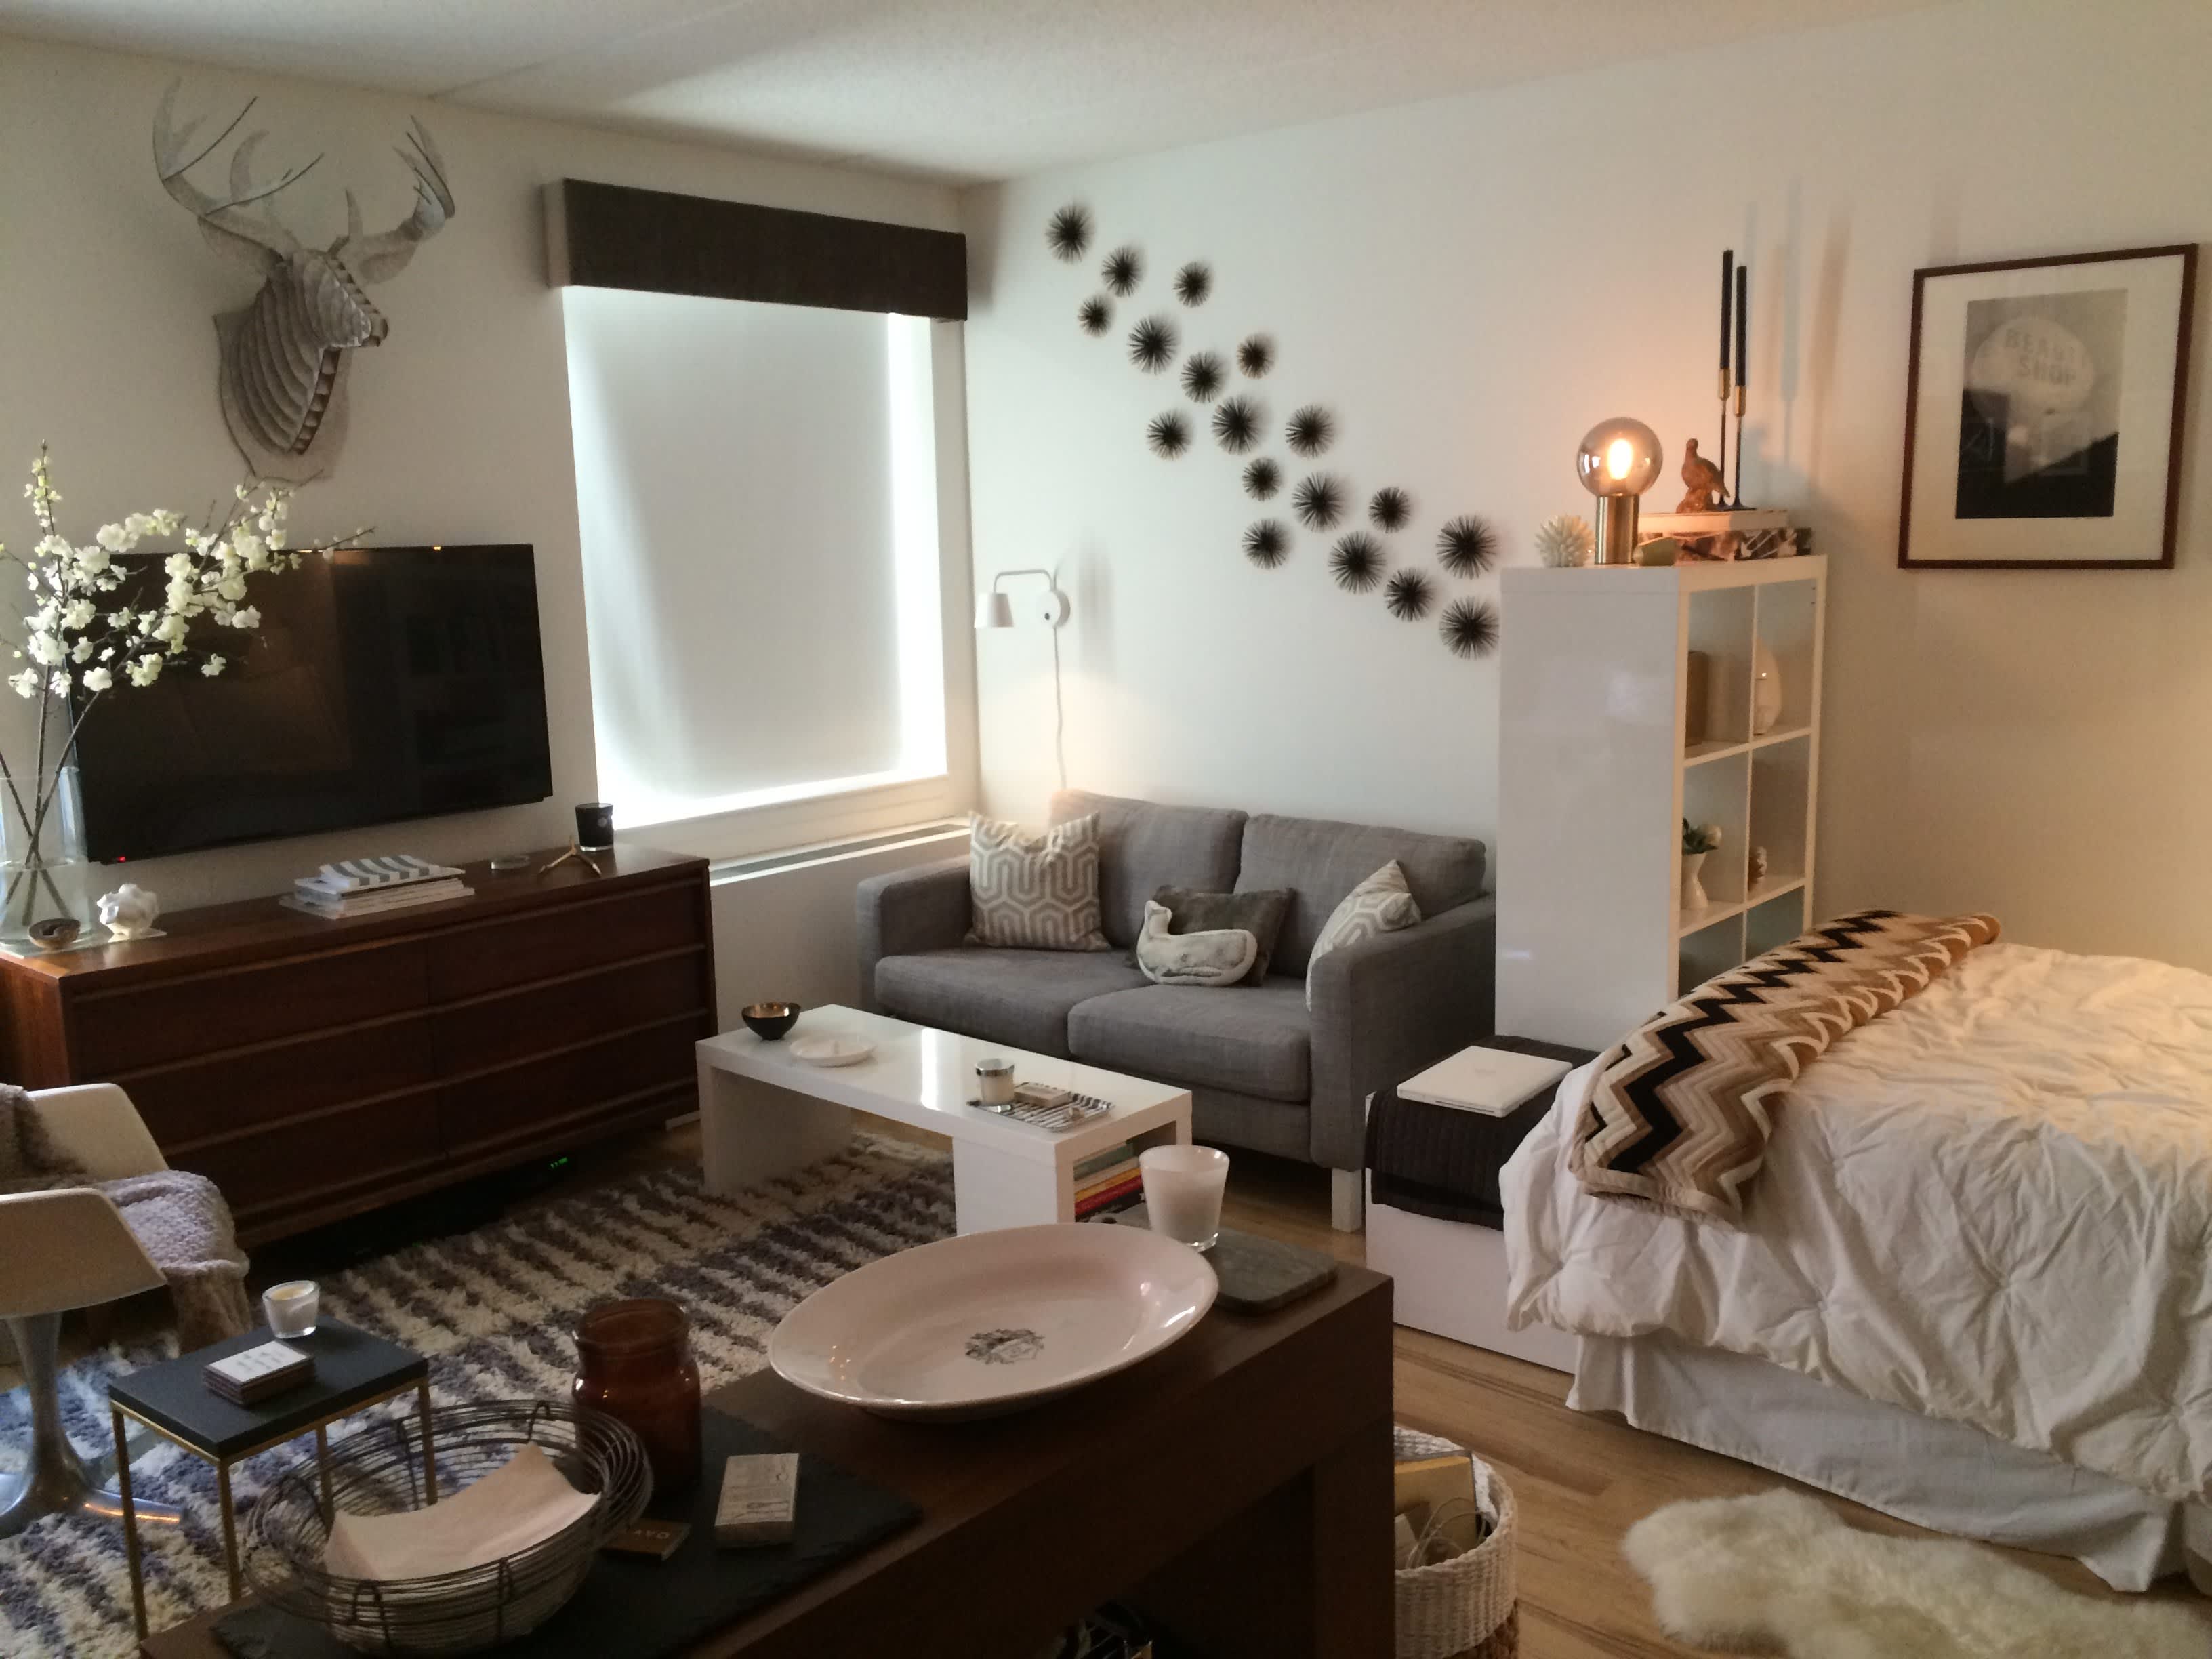 separate studio apartment ideas